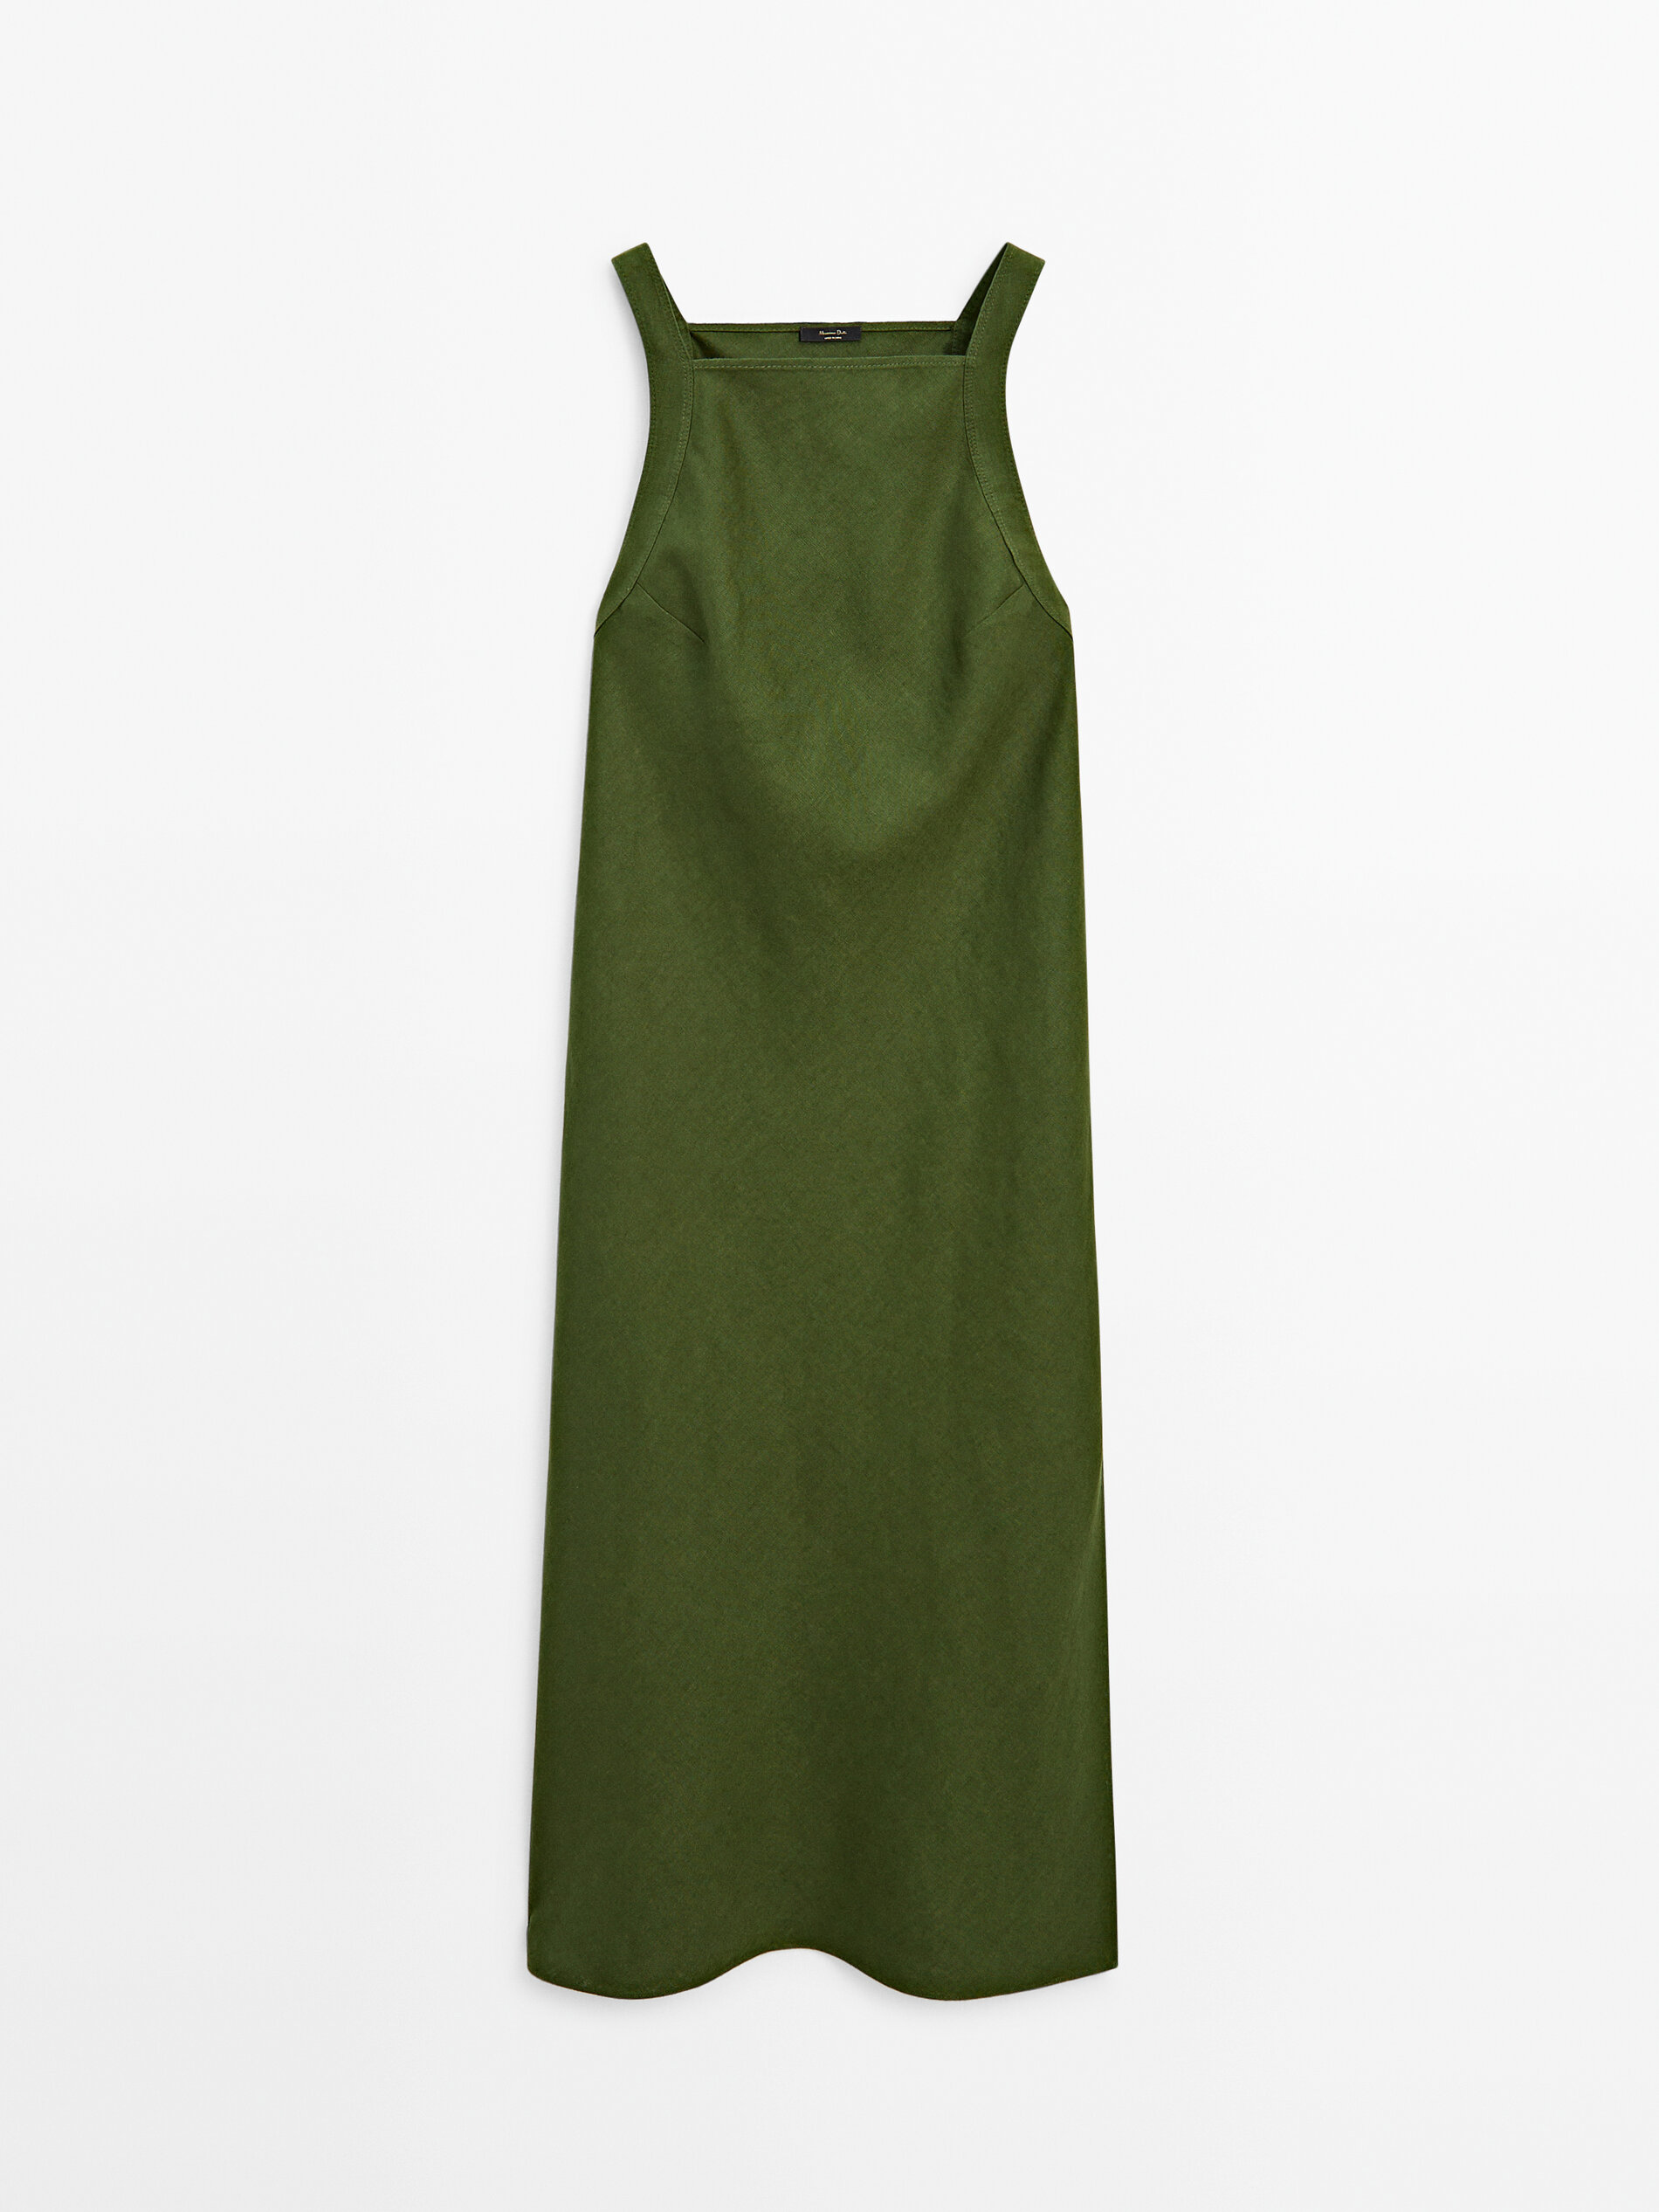 Платье Massimo Dutti Linen Halter, зеленый платье миди прямое из льна в клетку 48 каштановый